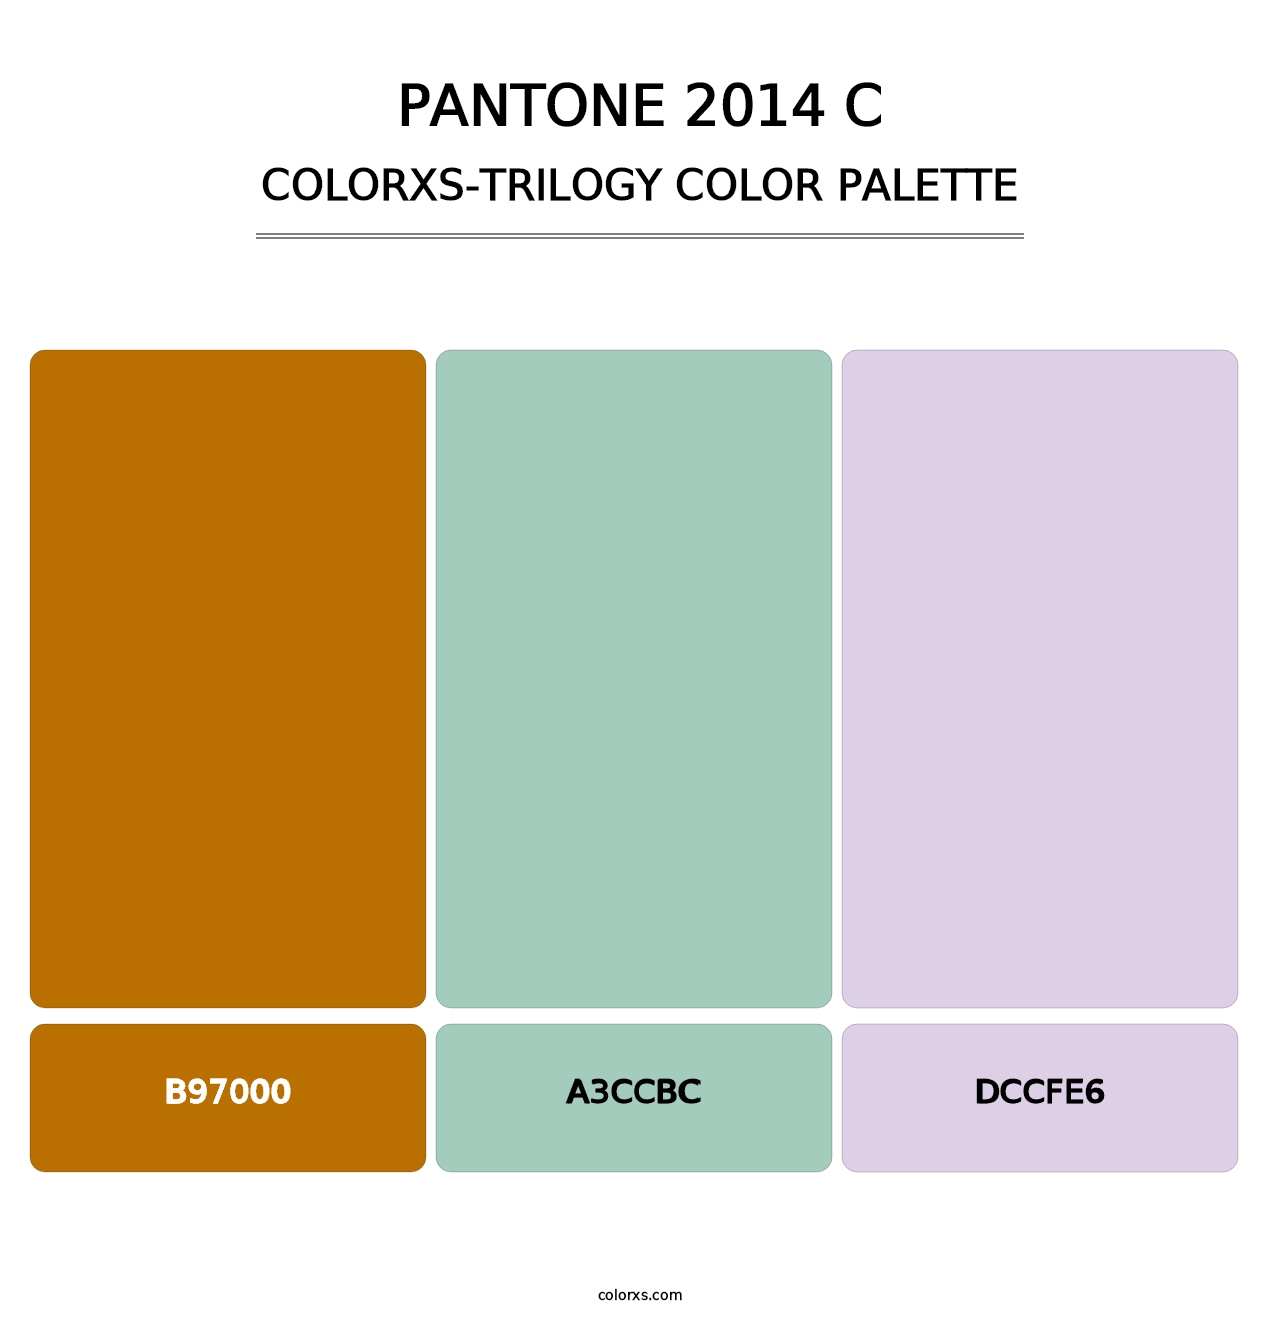 PANTONE 2014 C - Colorxs Trilogy Palette